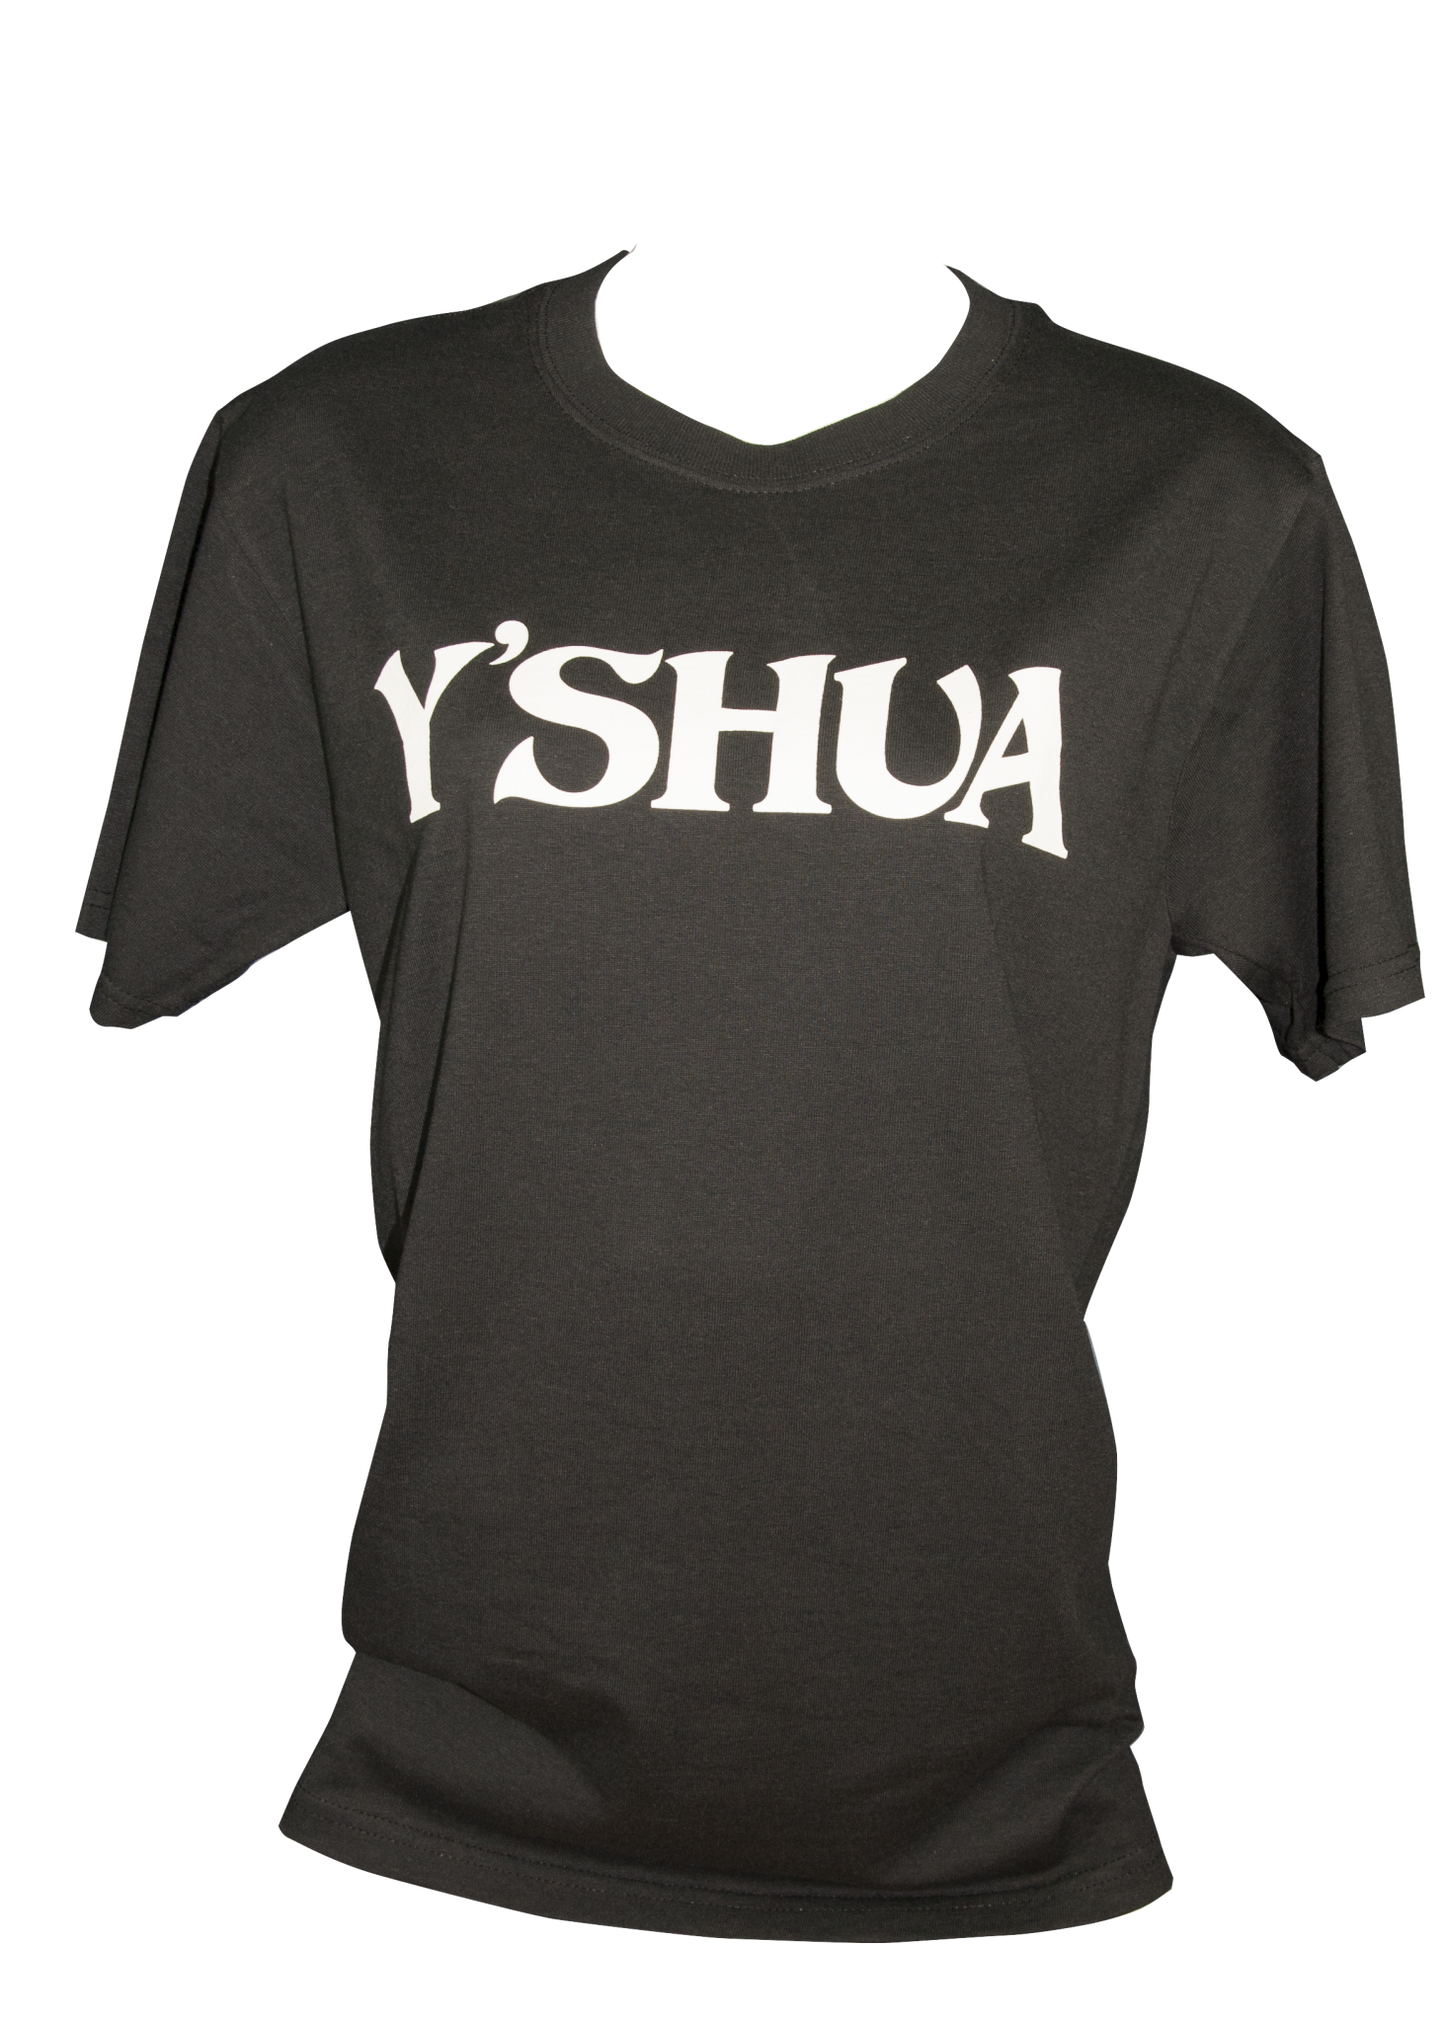 Y'shua T-shirt